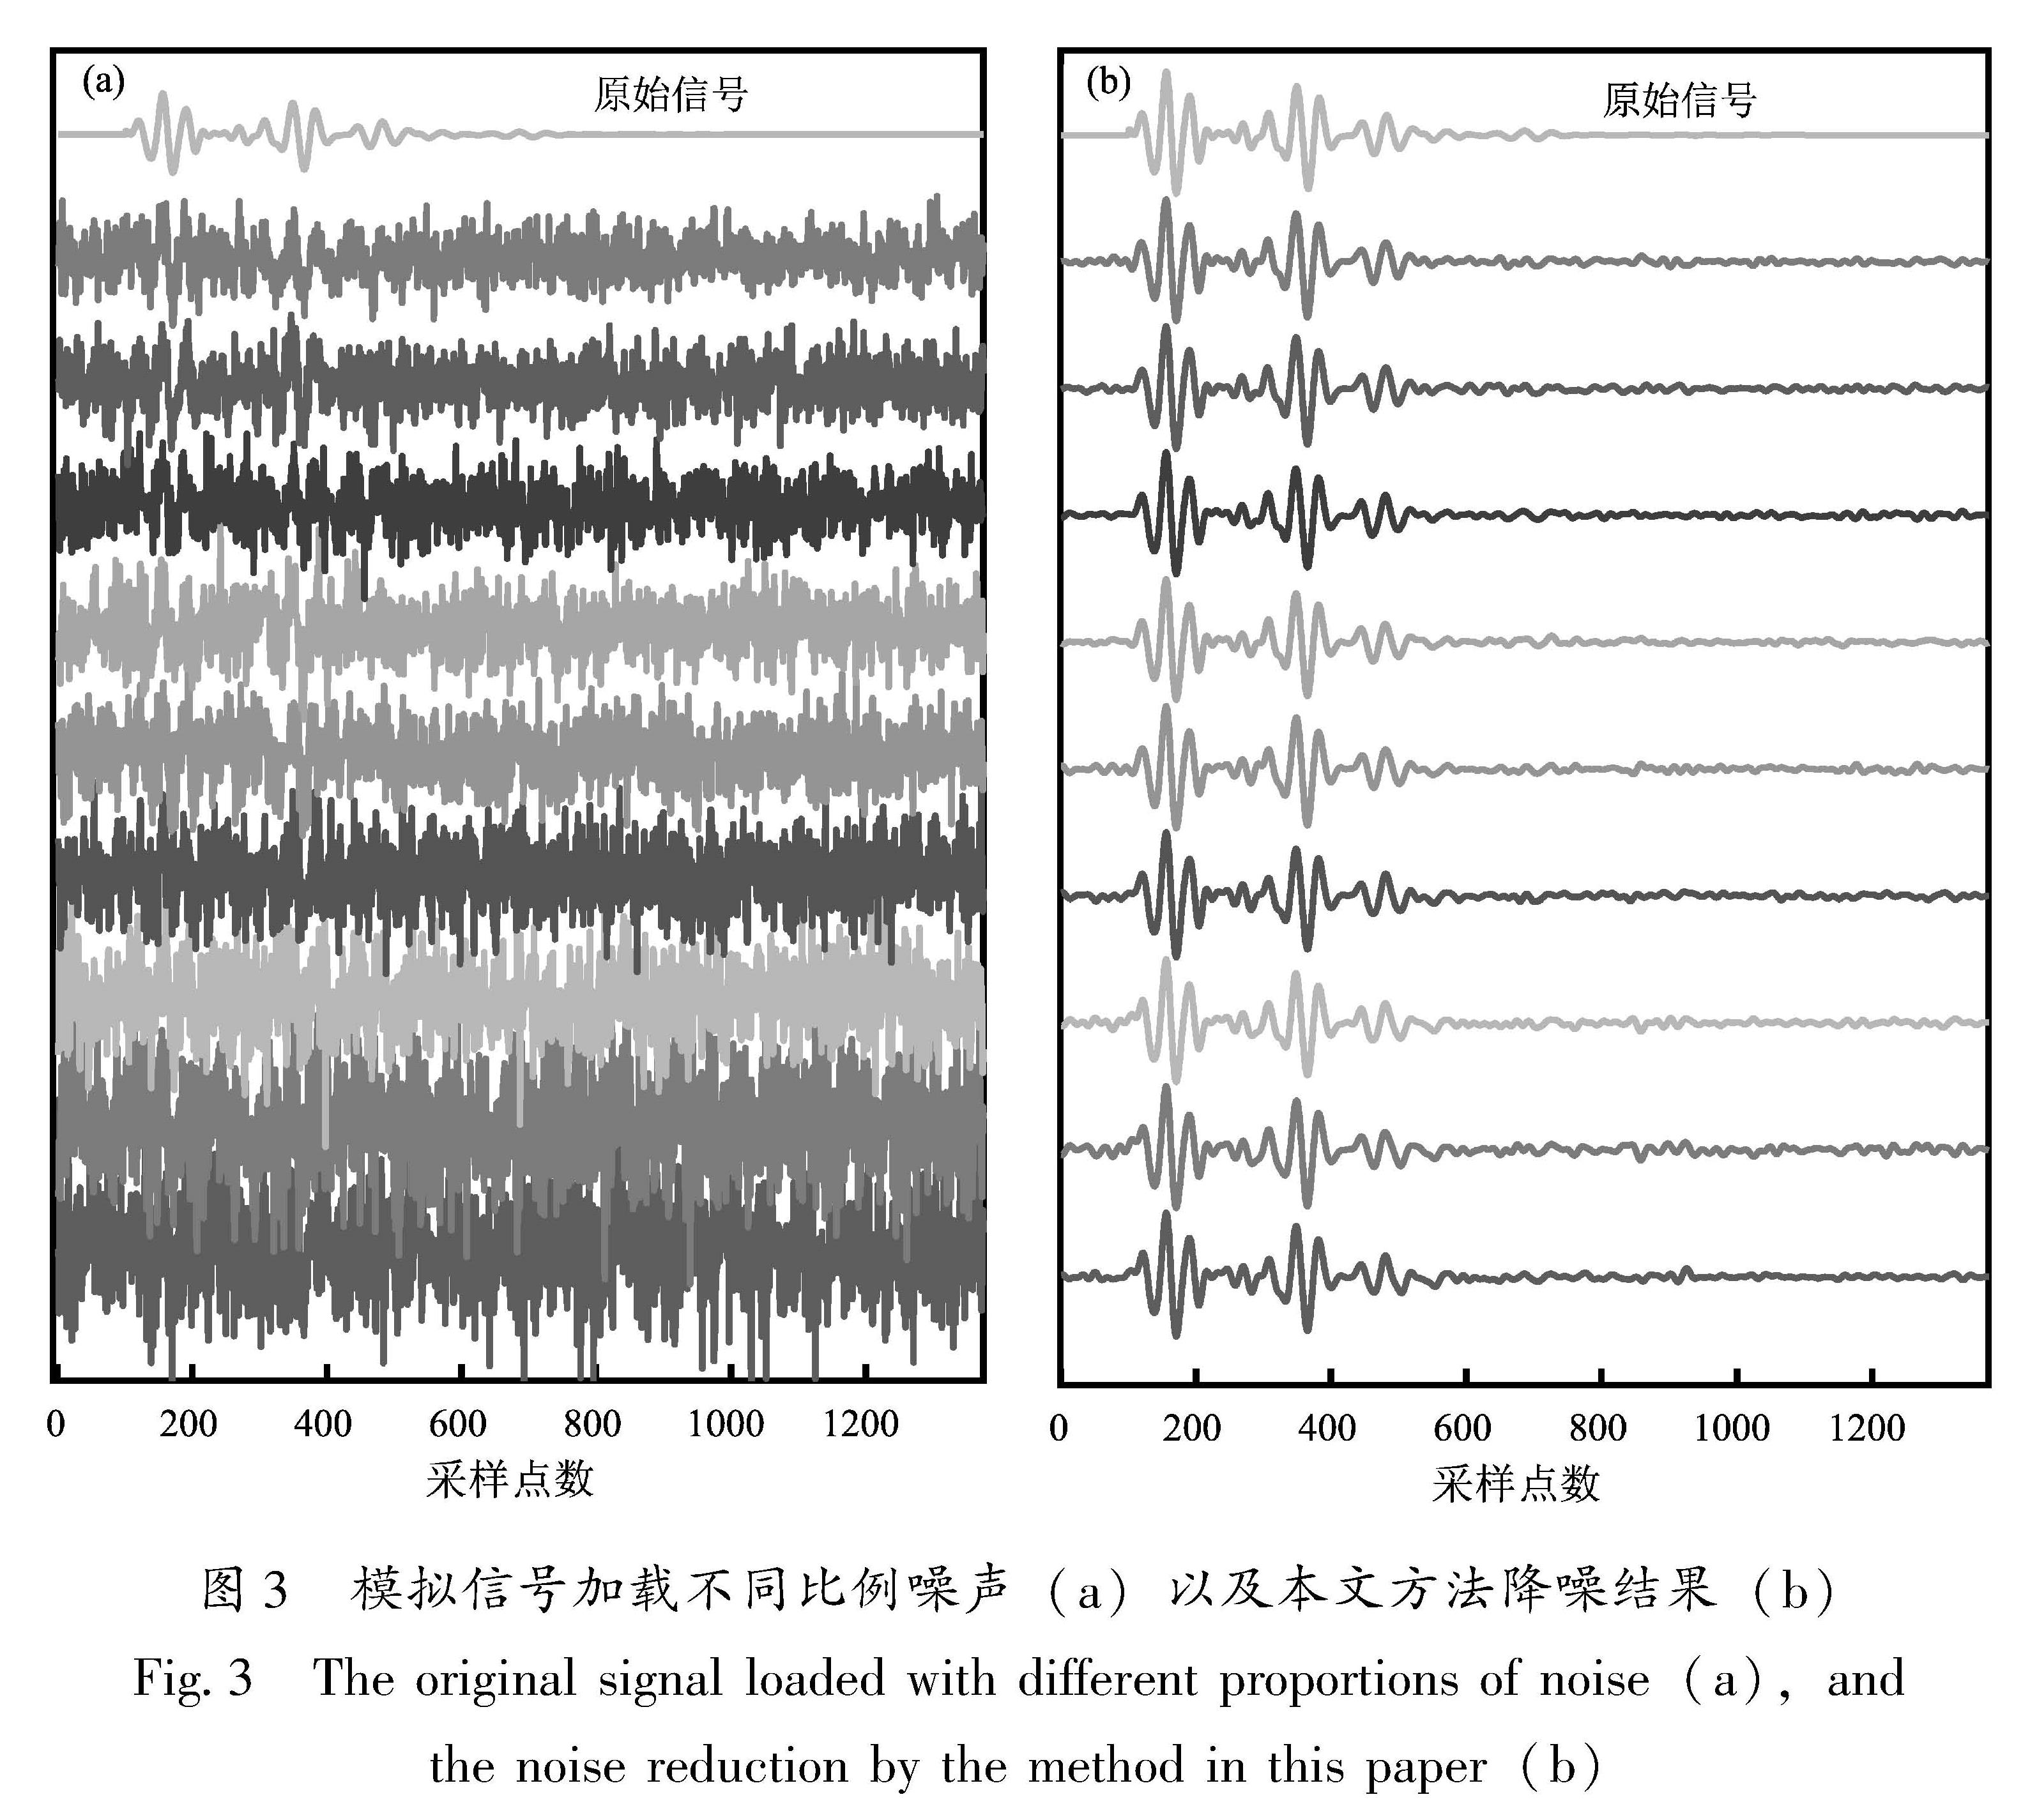 图3 模拟信号加载不同比例噪声(a)以及本文方法降噪结果(b)<br/>Fig.3 The original signal loaded with different proportions of noise(a),and the noise reduction by the method in this paper(b)